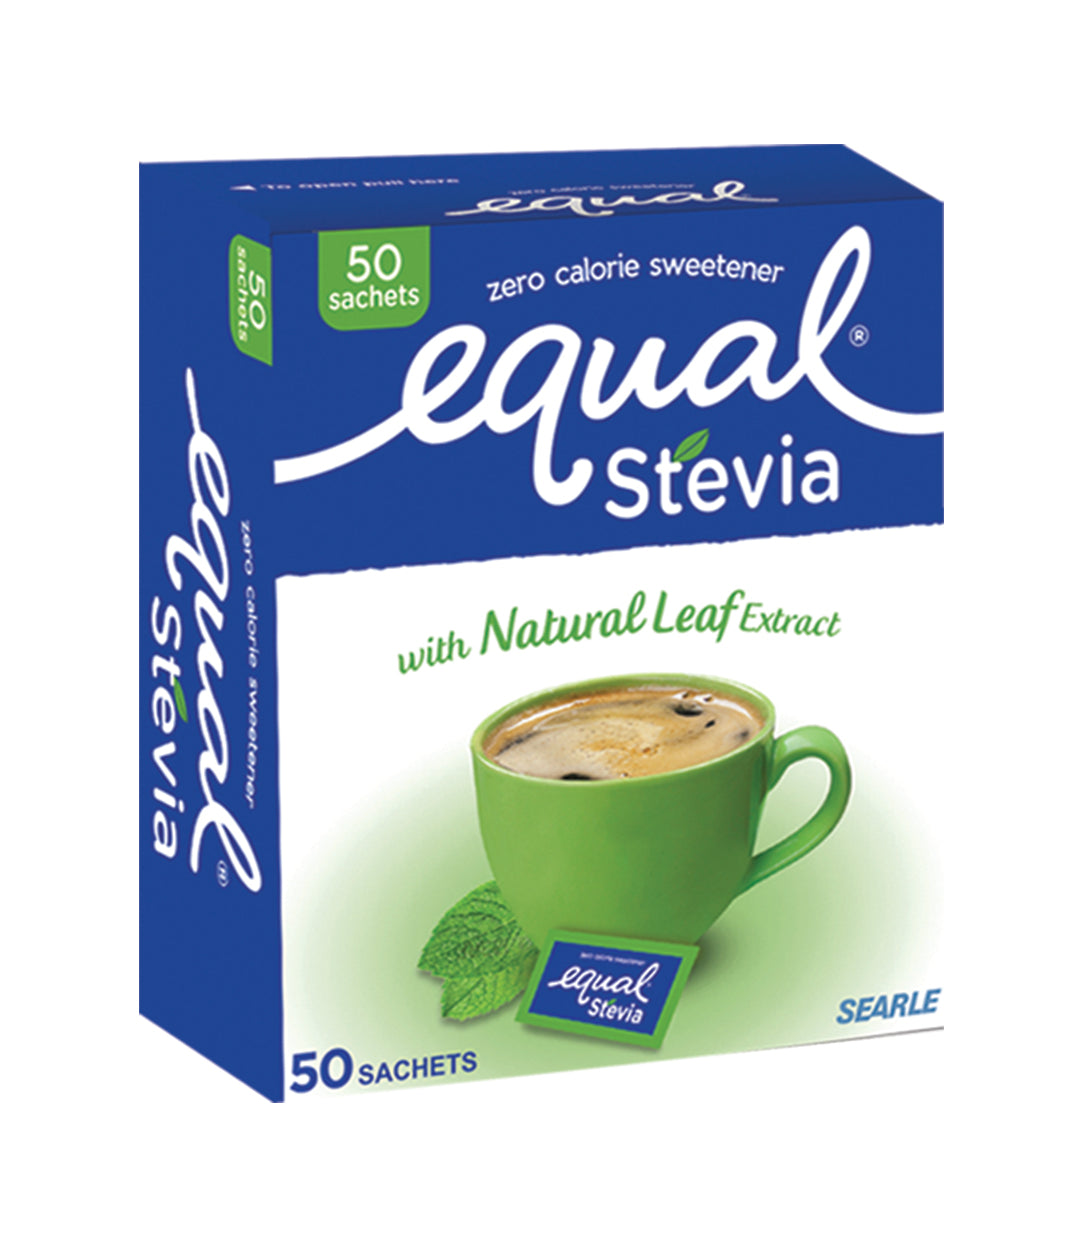 Equal Stevia Sachet Box - The Food Balance